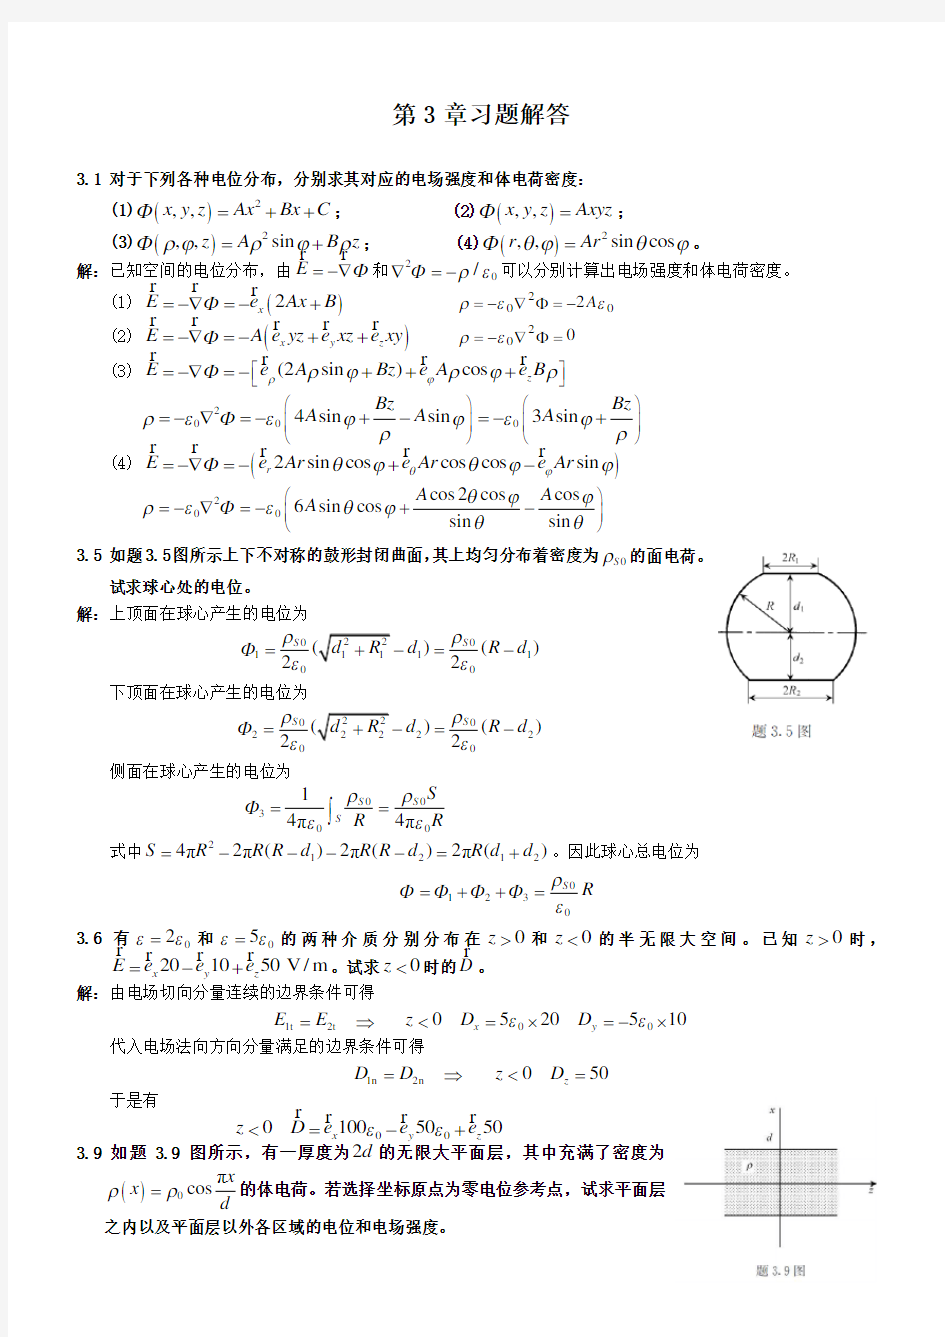 电磁场与电磁波理论(第二版)(徐立勤曹伟)第3章习题解答